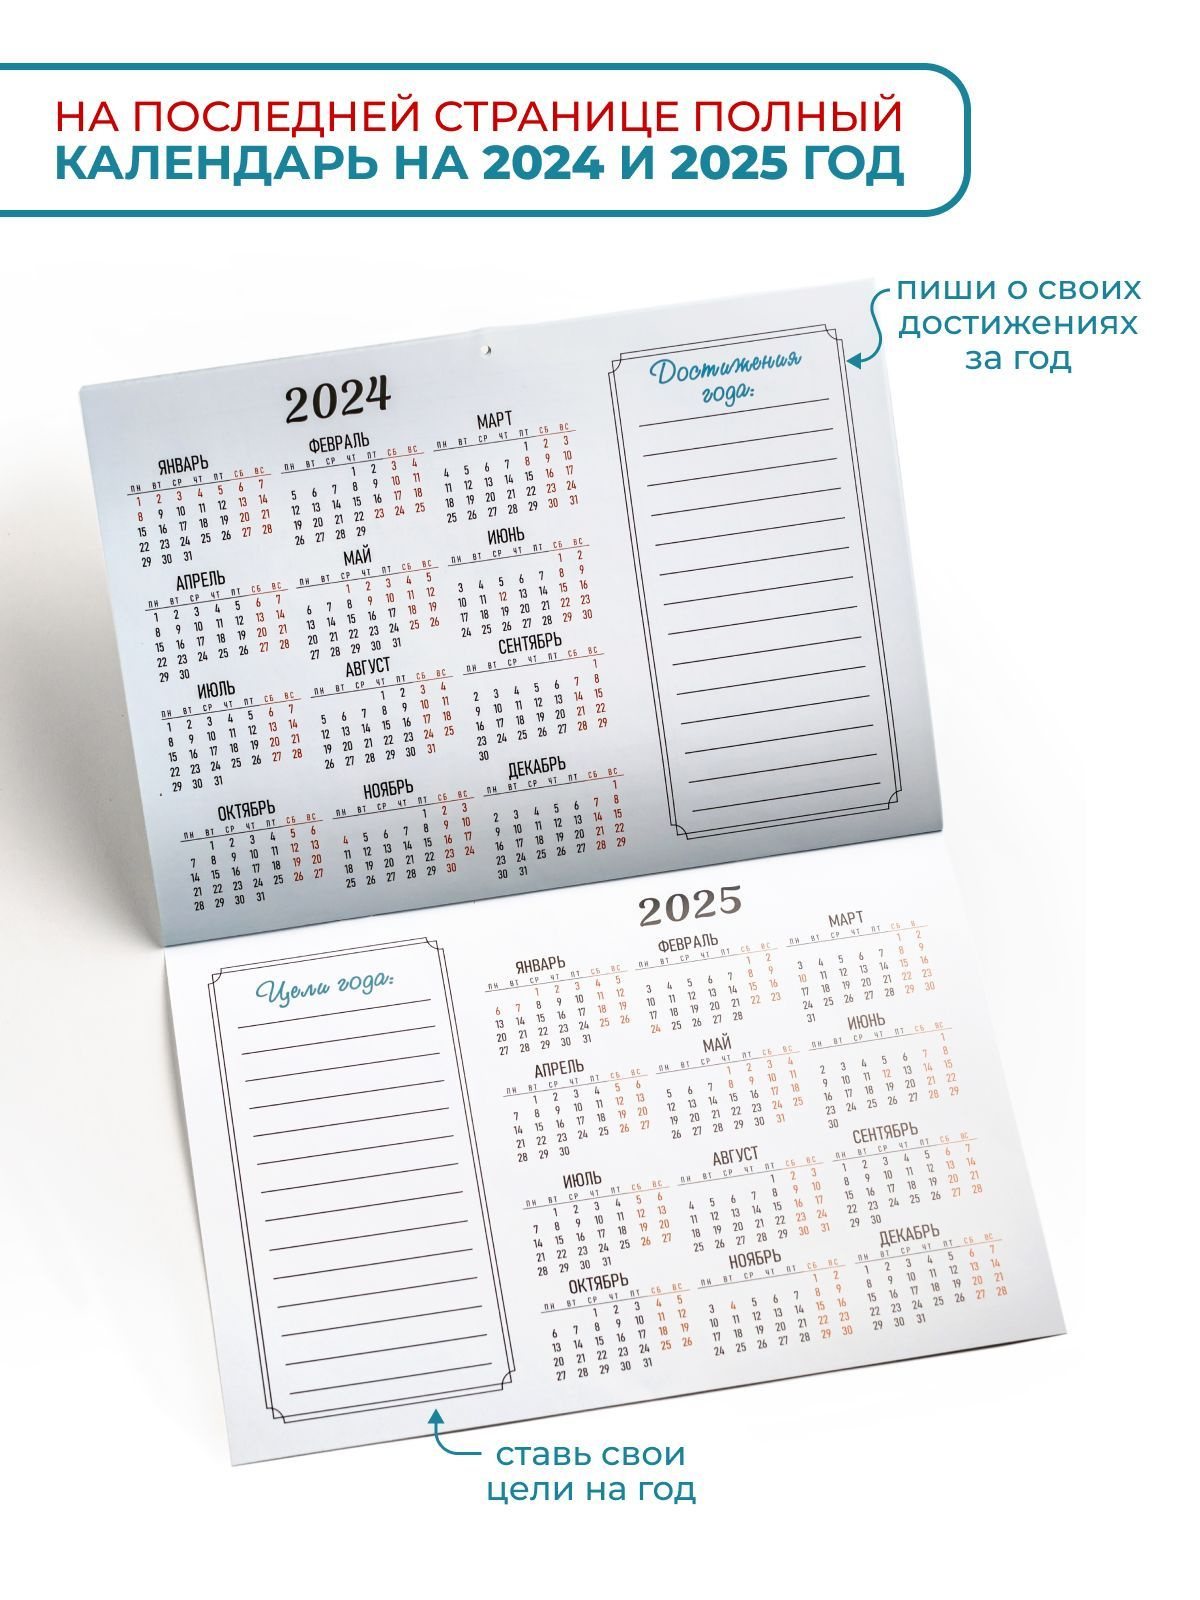 На последней странице календаря присутствуют общие календари на 2024 и 2025 года.